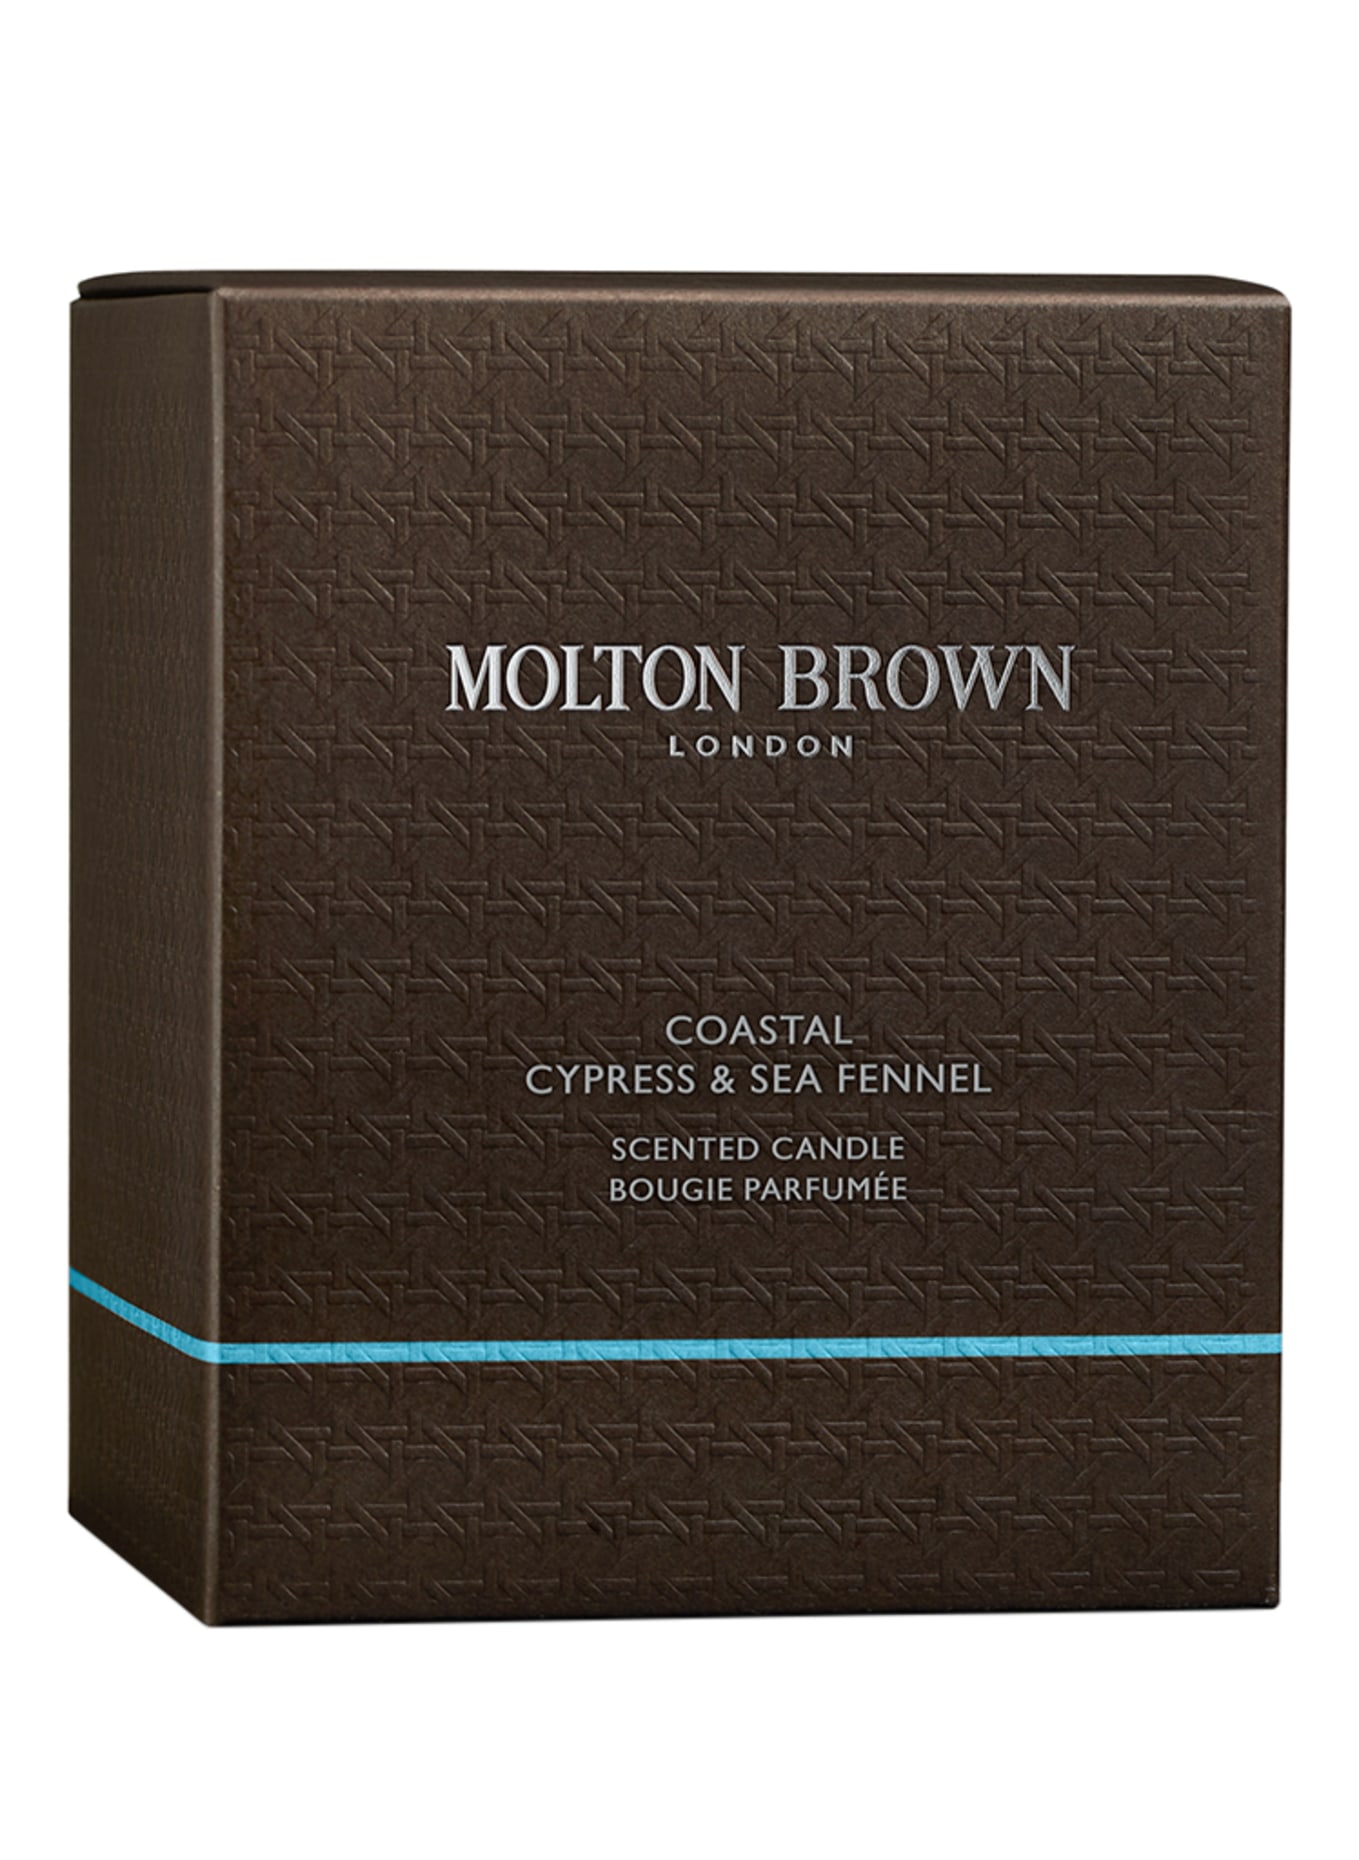 MOLTON BROWN COASTAL CYPRESS & SEA FENNEL (Obrázek 2)